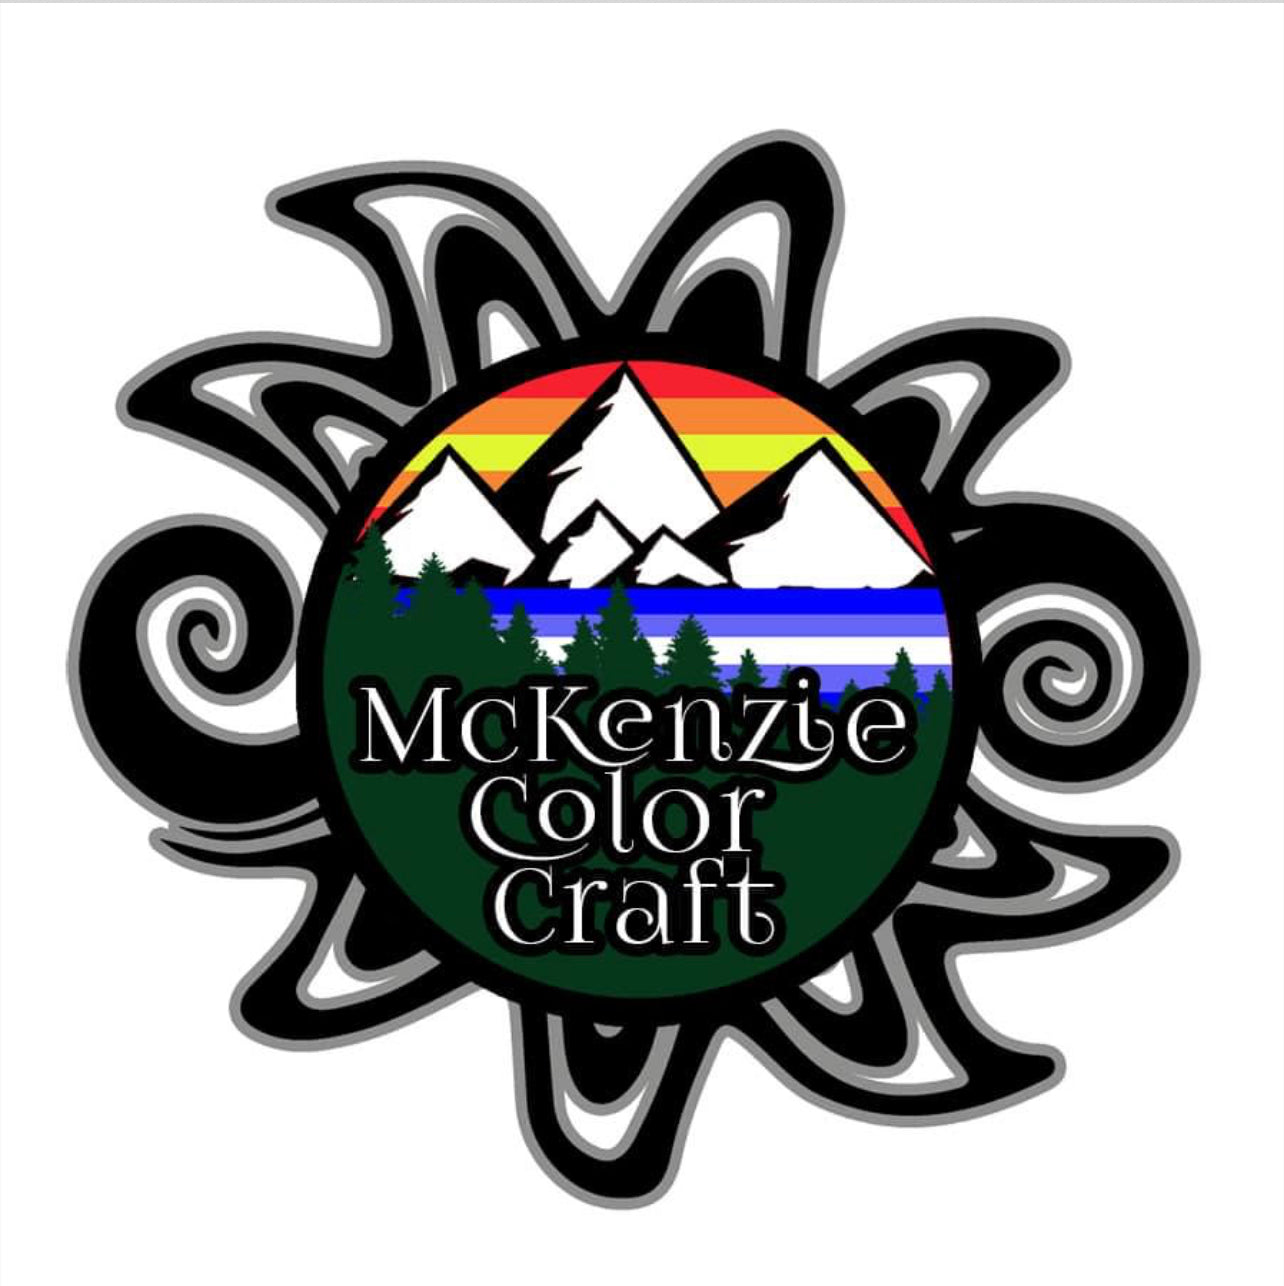 Mckenzie Color Craft